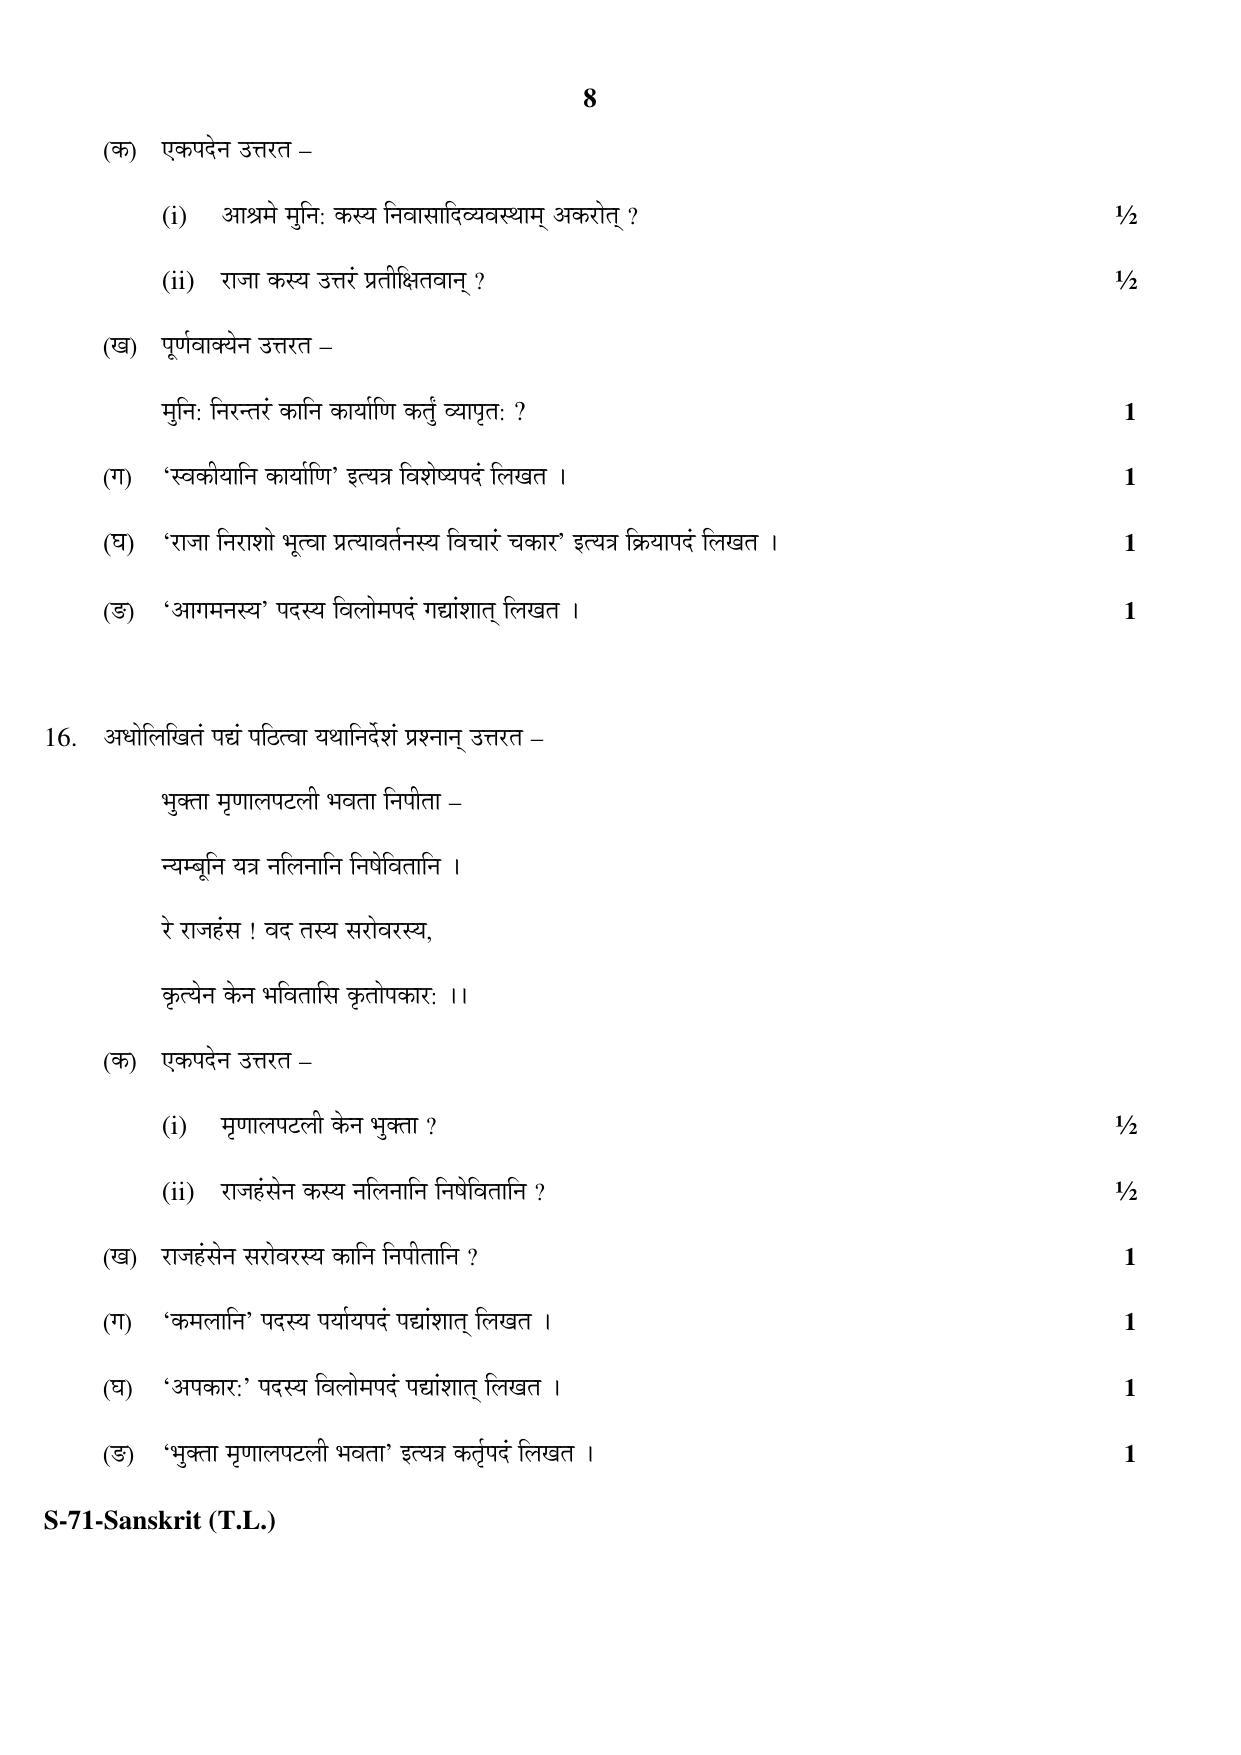 RBSE Class 10 Sanskrit (T.L.) 2017 Question Paper - Page 8